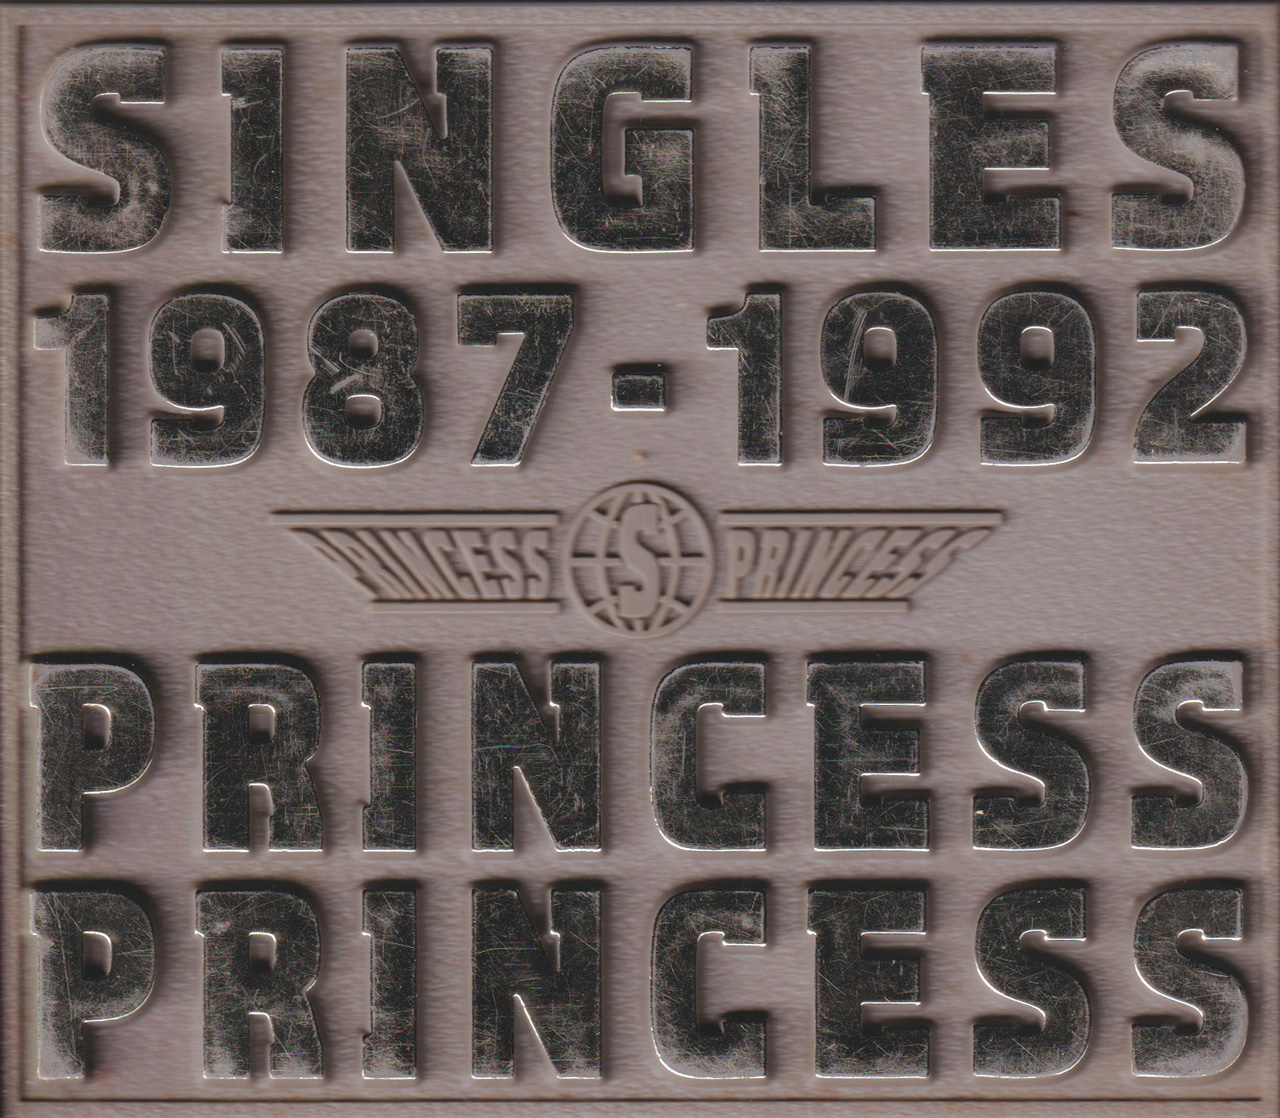 SINGLES 1987-1992 / PRINCESS PRINCESS